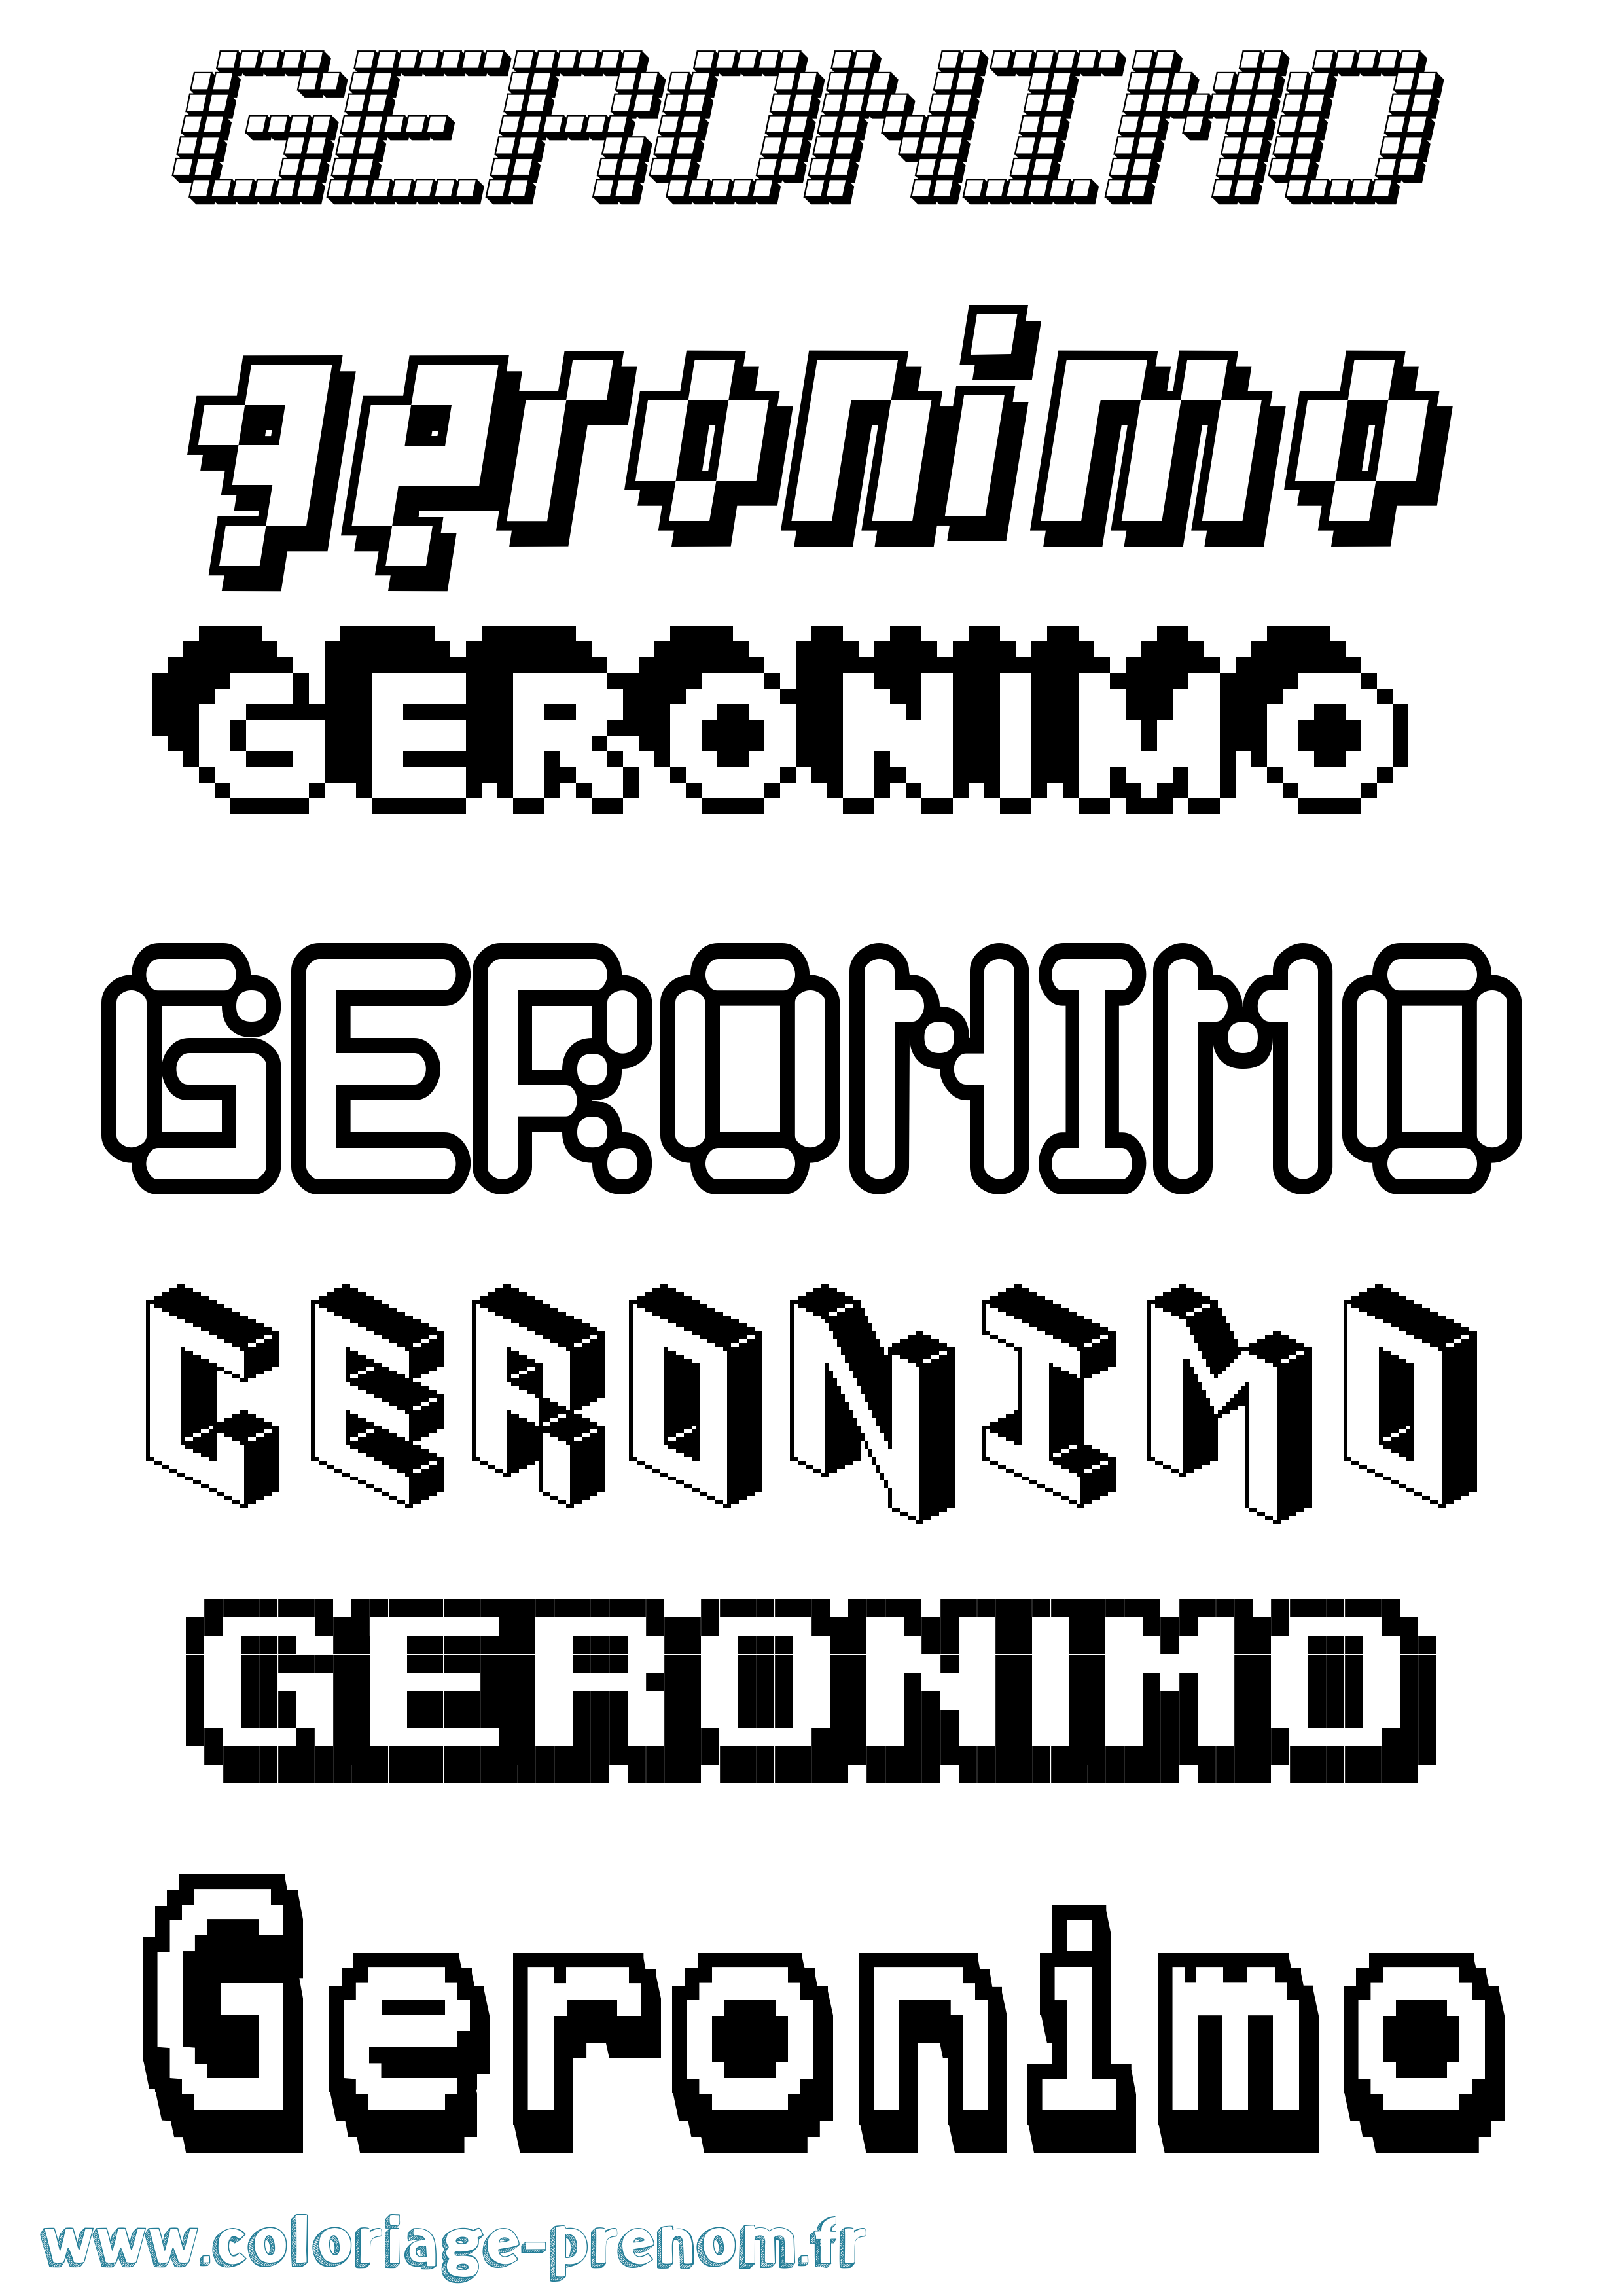 Coloriage prénom Geronimo Pixel